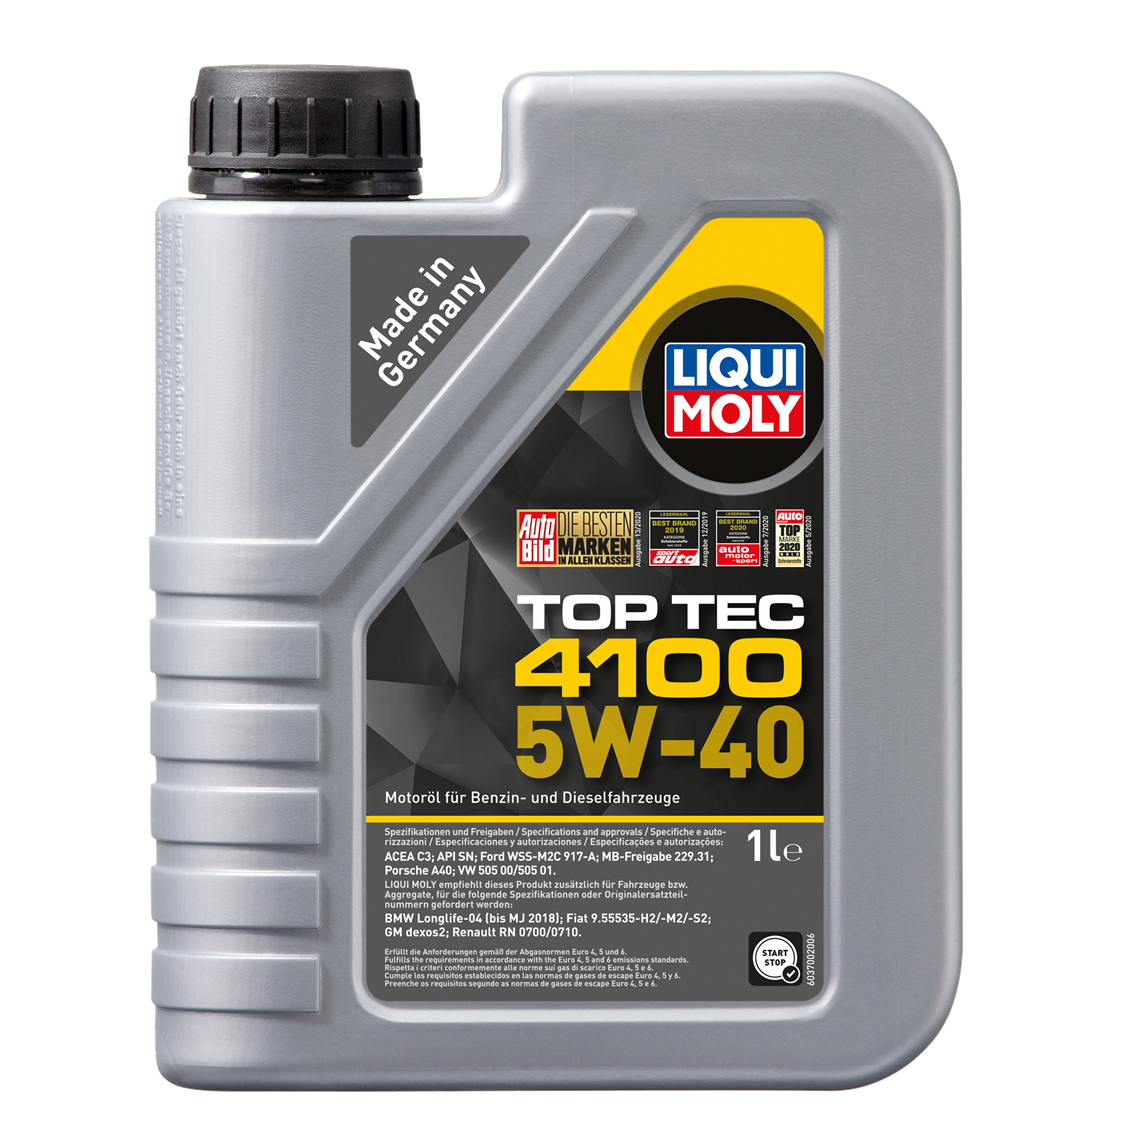 Liqui Moly TopTec 4100 5W-40 (2682, 9510) / 1 L